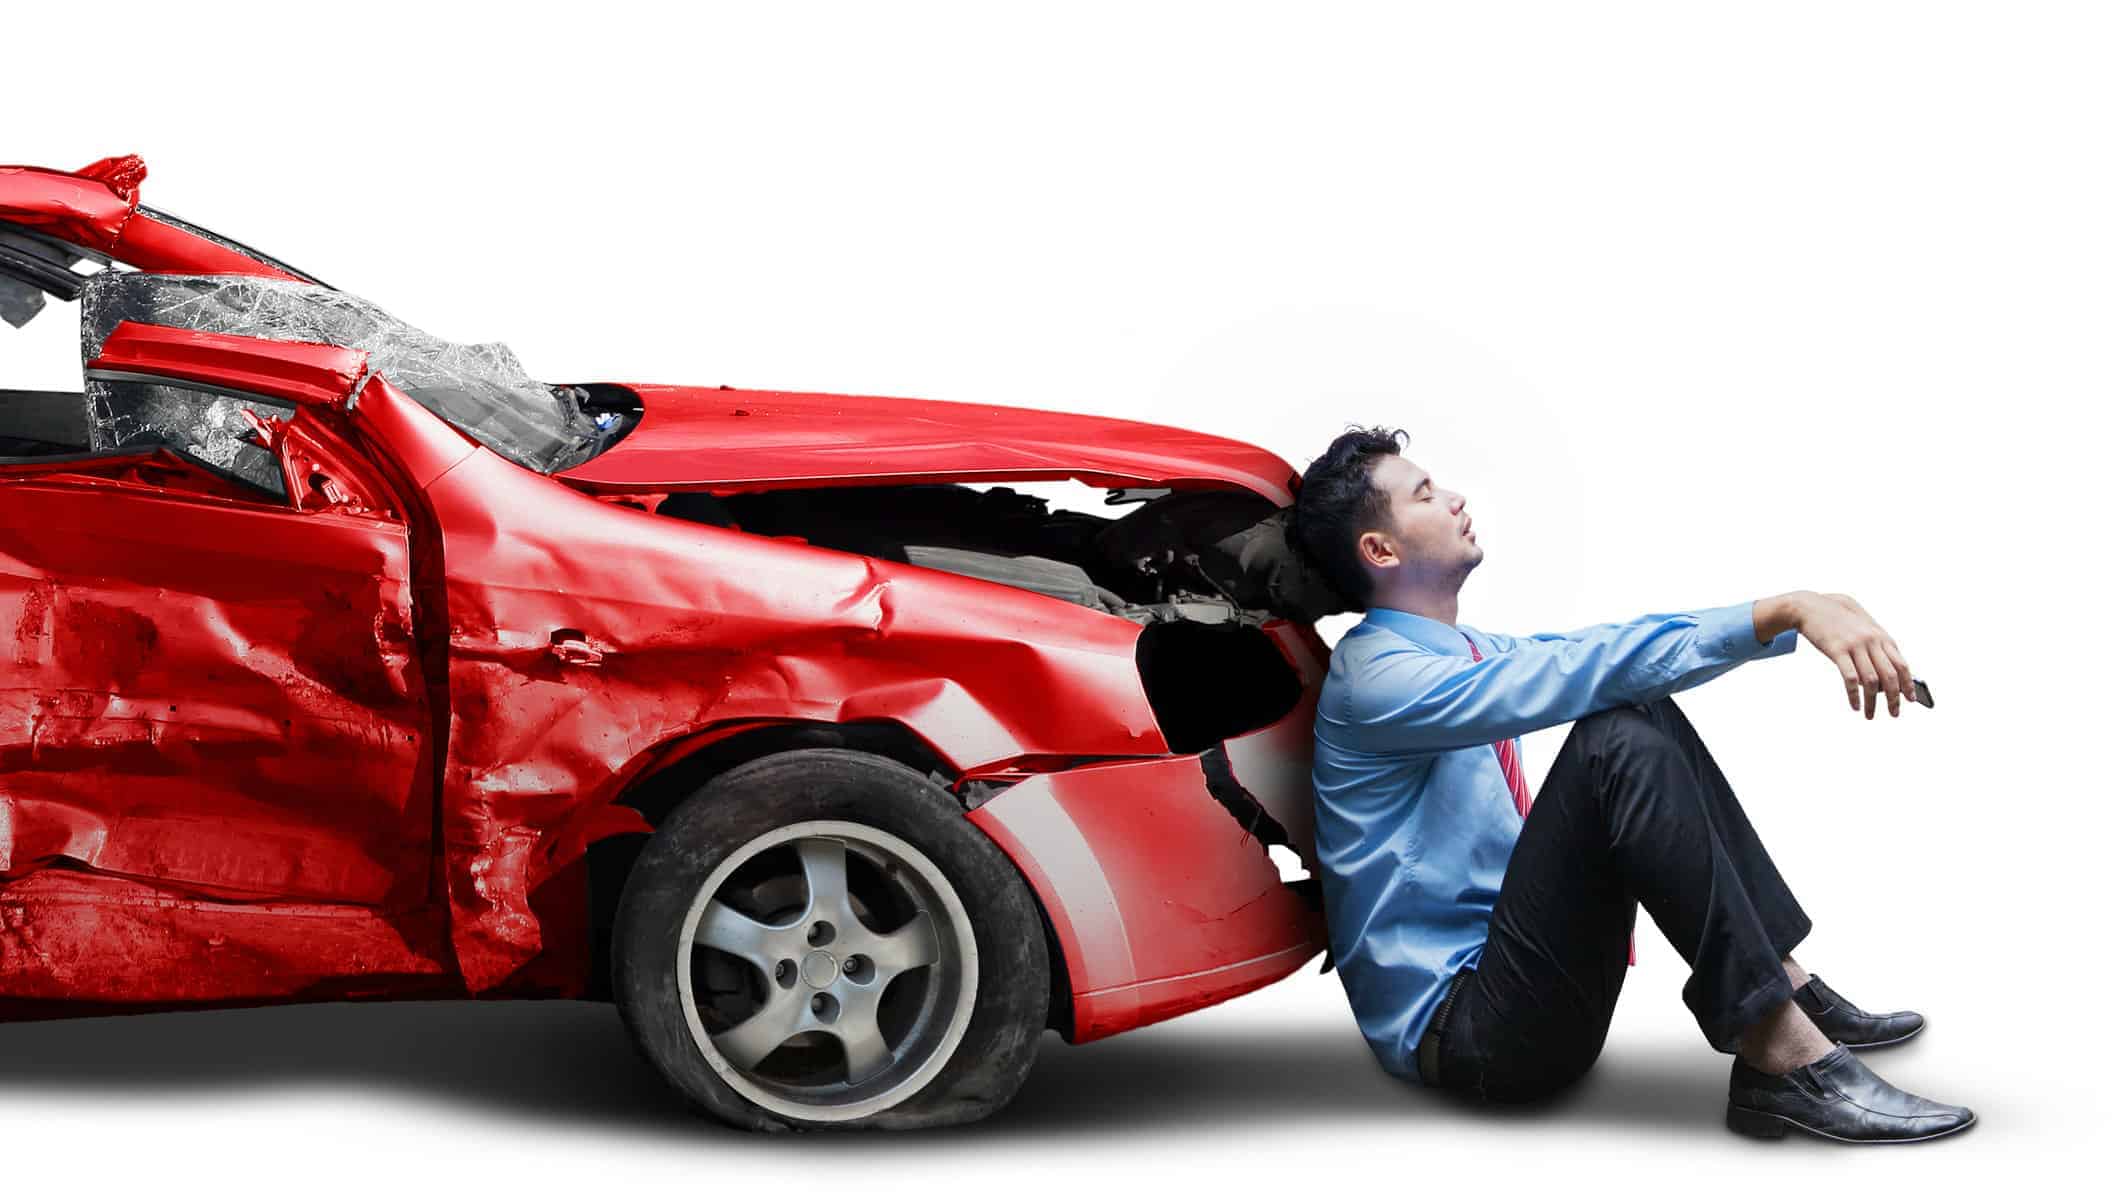 تصویر یک خودروی قرمز را نشان می‌دهد که در یک تصادف آسیب دیده است. بخش جلوی خودرو به شدت فشرده و آسیب دیده است. در کنار خودرو، یک فرد با لباس‌های رسمی نشسته و به طور عمده به خودرو نگاه می‌کند. این تصویر ممکن است برای مقالات و مطالب مرتبط با بیمه بدنه خودرو مناسب باشد، زیرا نشان‌دهنده آسیب‌های احتمالی است که در صورت وقوع تصادف به خودرو وارد می‌شود. این تصویر همچنین می‌تواند احساساتی مانند ناراحتی، تاسف، ترس یا نگرانی را در خواننده برانگیزد. این تصویر می‌تواند به خواننده یادآوری کند که چقدر مهم است که خودروی خود را با بیمه بدنه محافظت کند و در صورت بروز هرگونه حادثه، از حقوق خود استفاده کند.